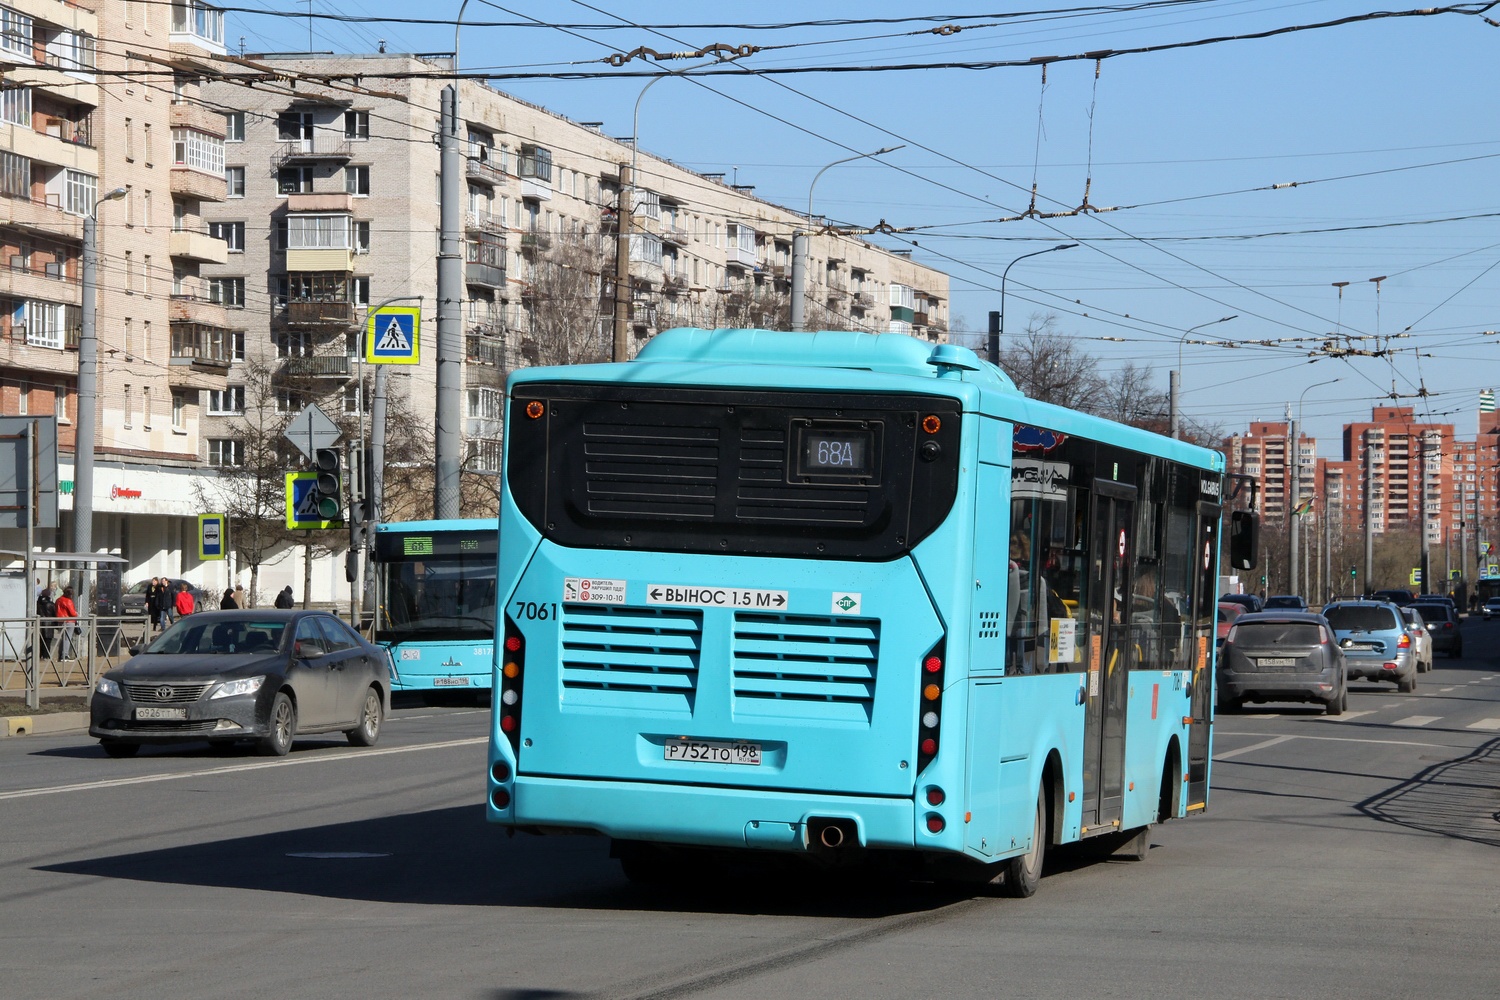 Sankt Peterburgas, Volgabus-4298.G4 (LNG) Nr. 7061